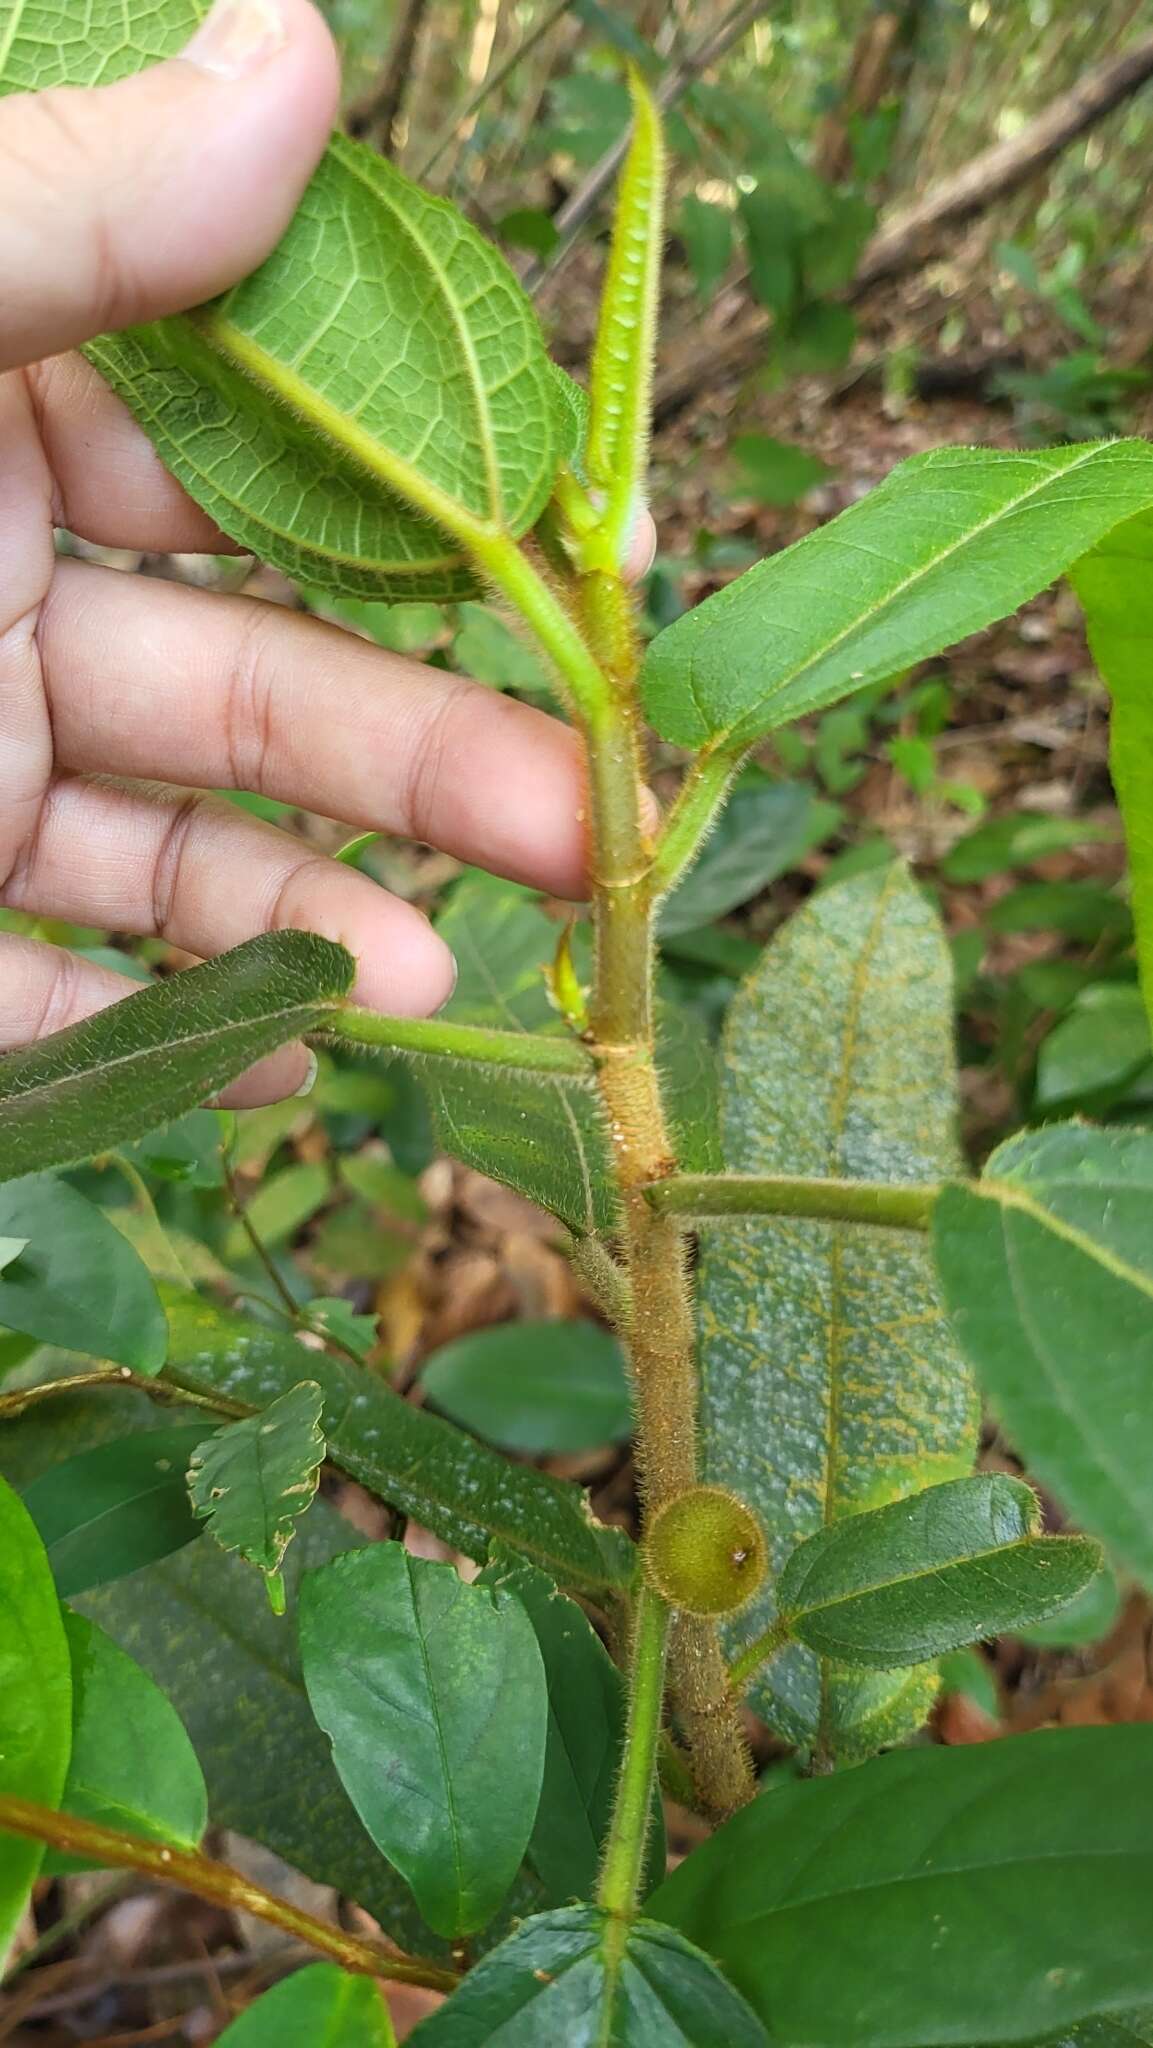 Image of Ficus aurata (Miq.) Miq.